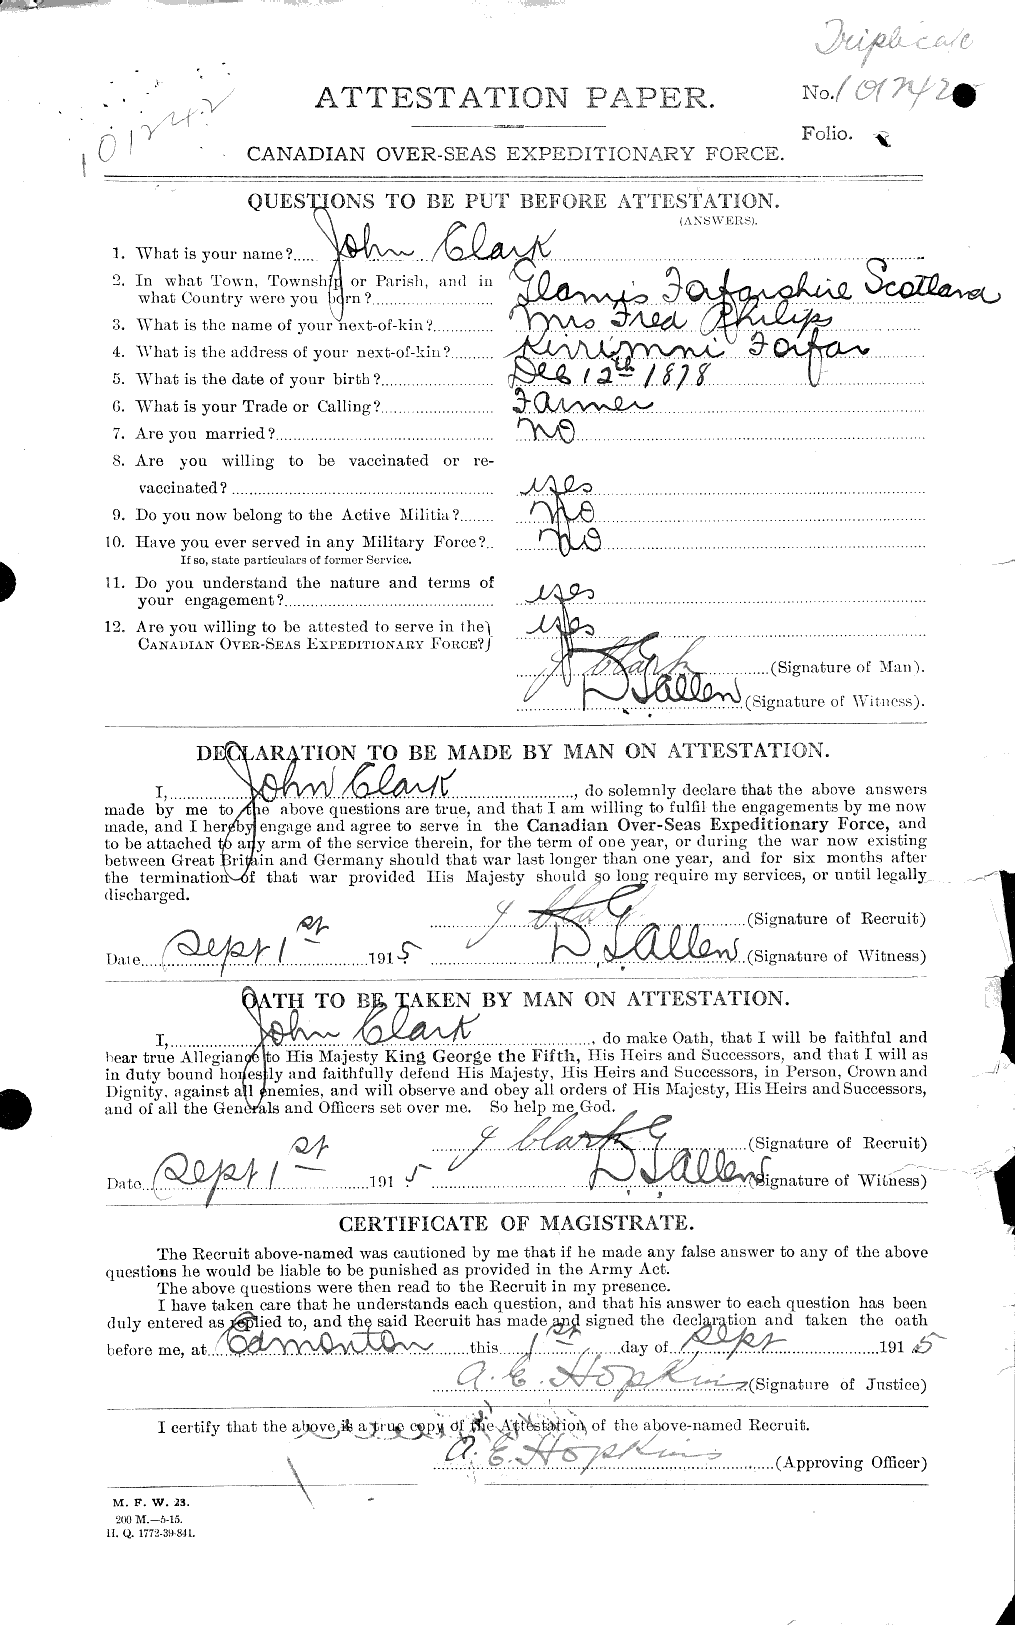 Dossiers du Personnel de la Première Guerre mondiale - CEC 023369a